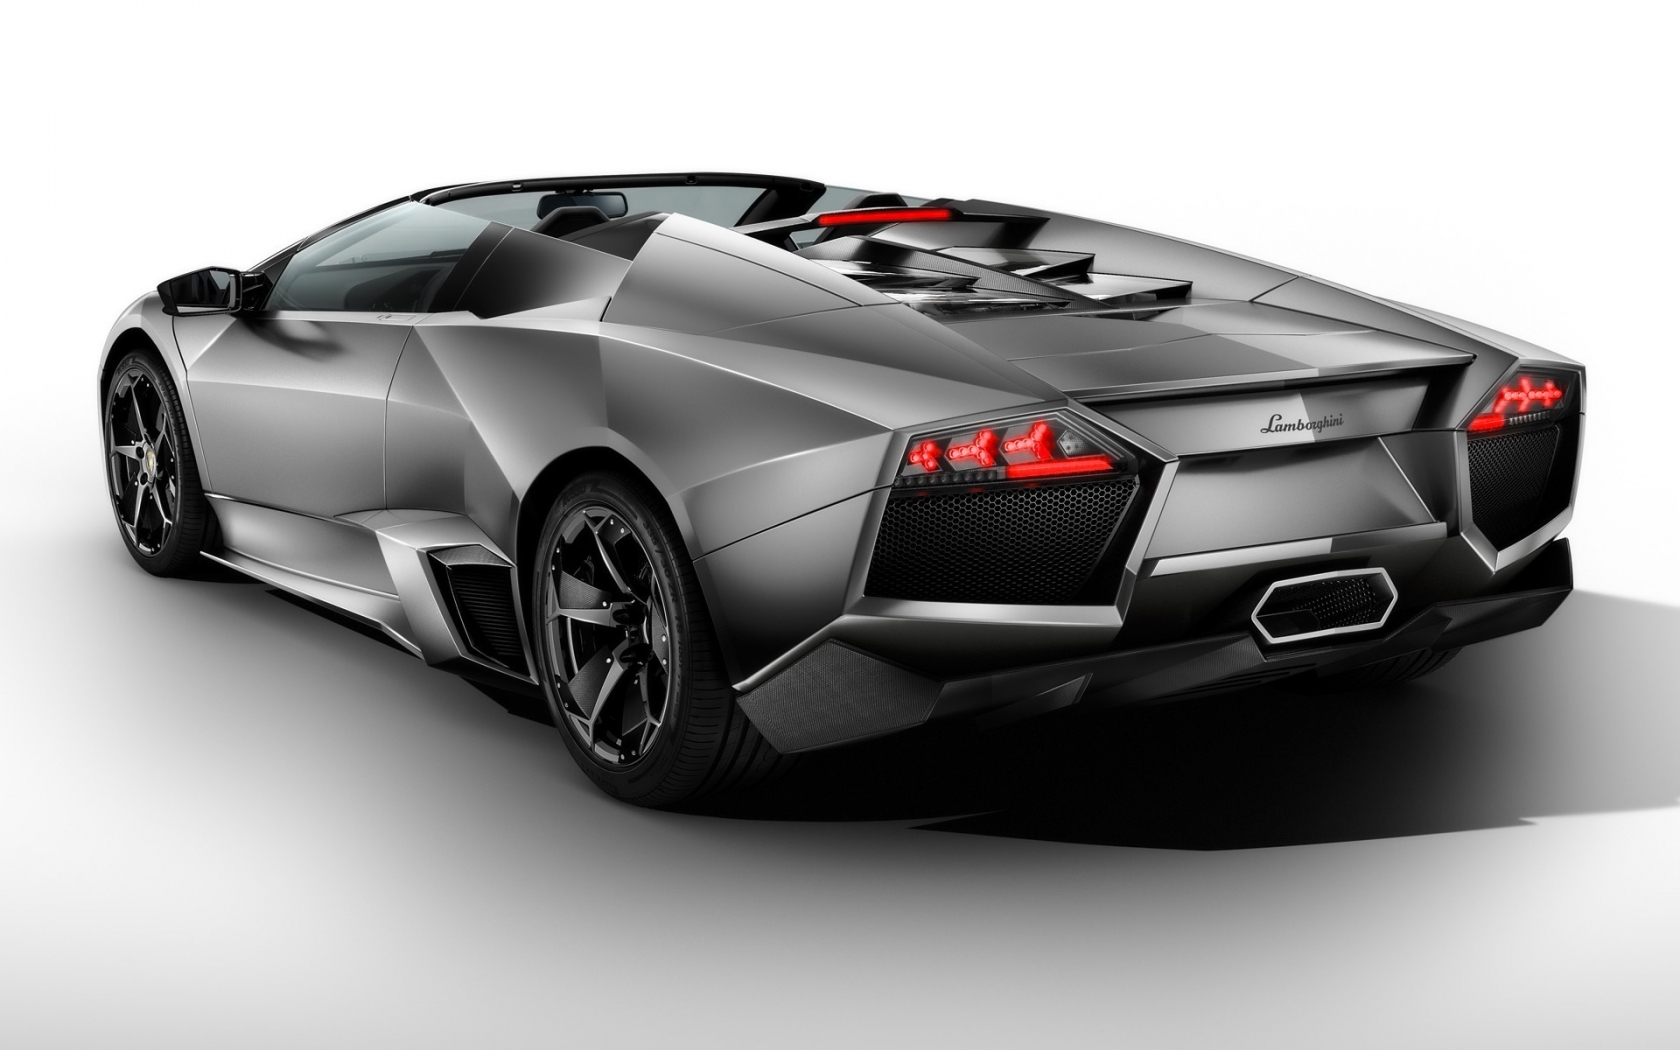 Lamborghini Reventon Roadster Rear 2010 for 1680 x 1050 widescreen resolution